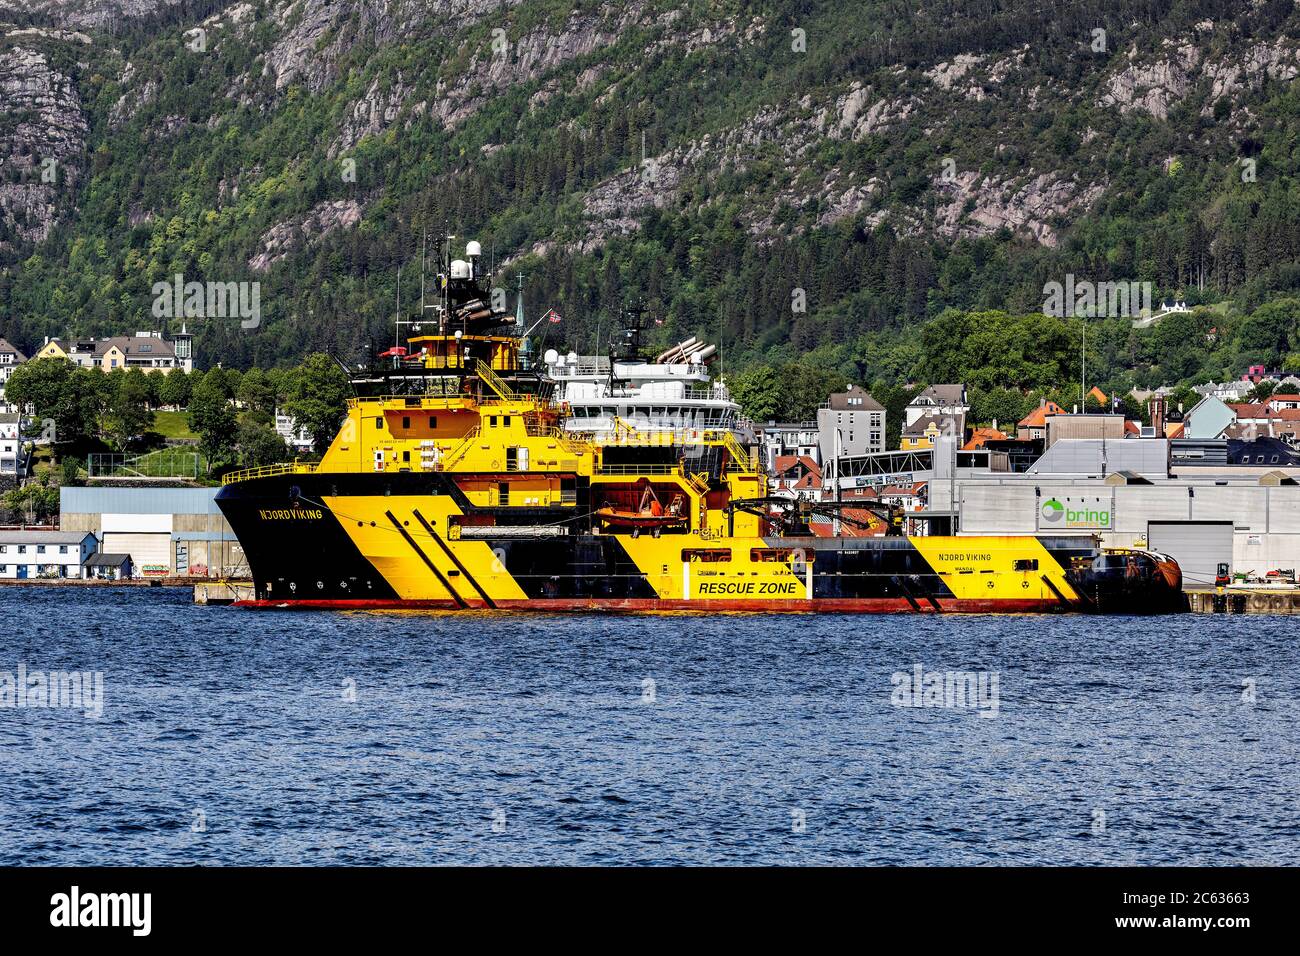 Offshore-Versorgung AHTS Schiff Njord Viking am Jekteviksterminalen Kai, in Damsgaardssundet, im Hafen von Bergen, Norwegen. Stockfoto